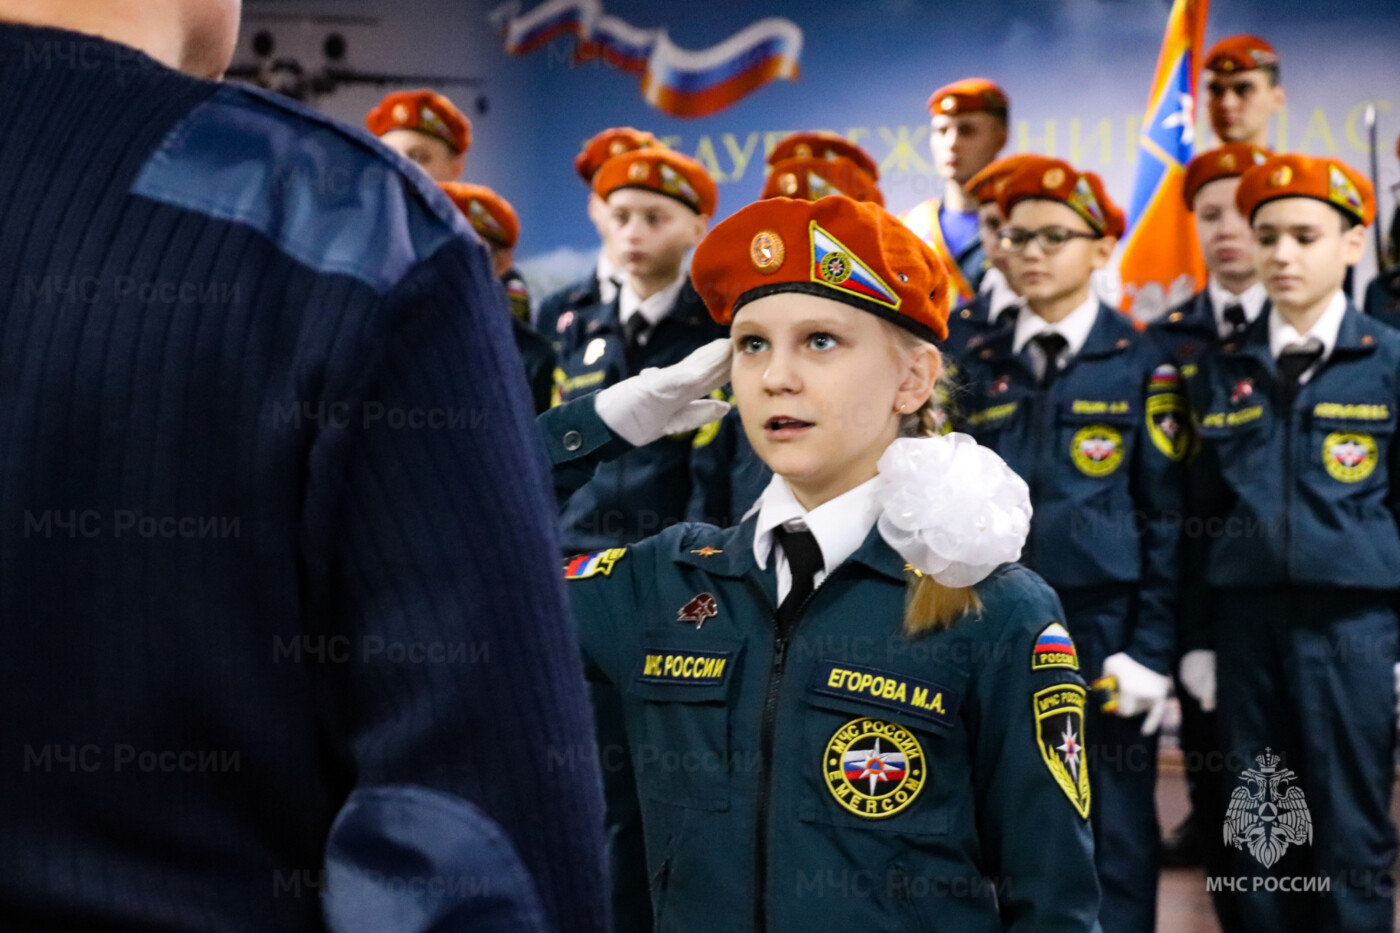 Специальные звания сотрудников МЧС ФПС России | Пожаротушение, Спортивные мужчины, Памятный альбом